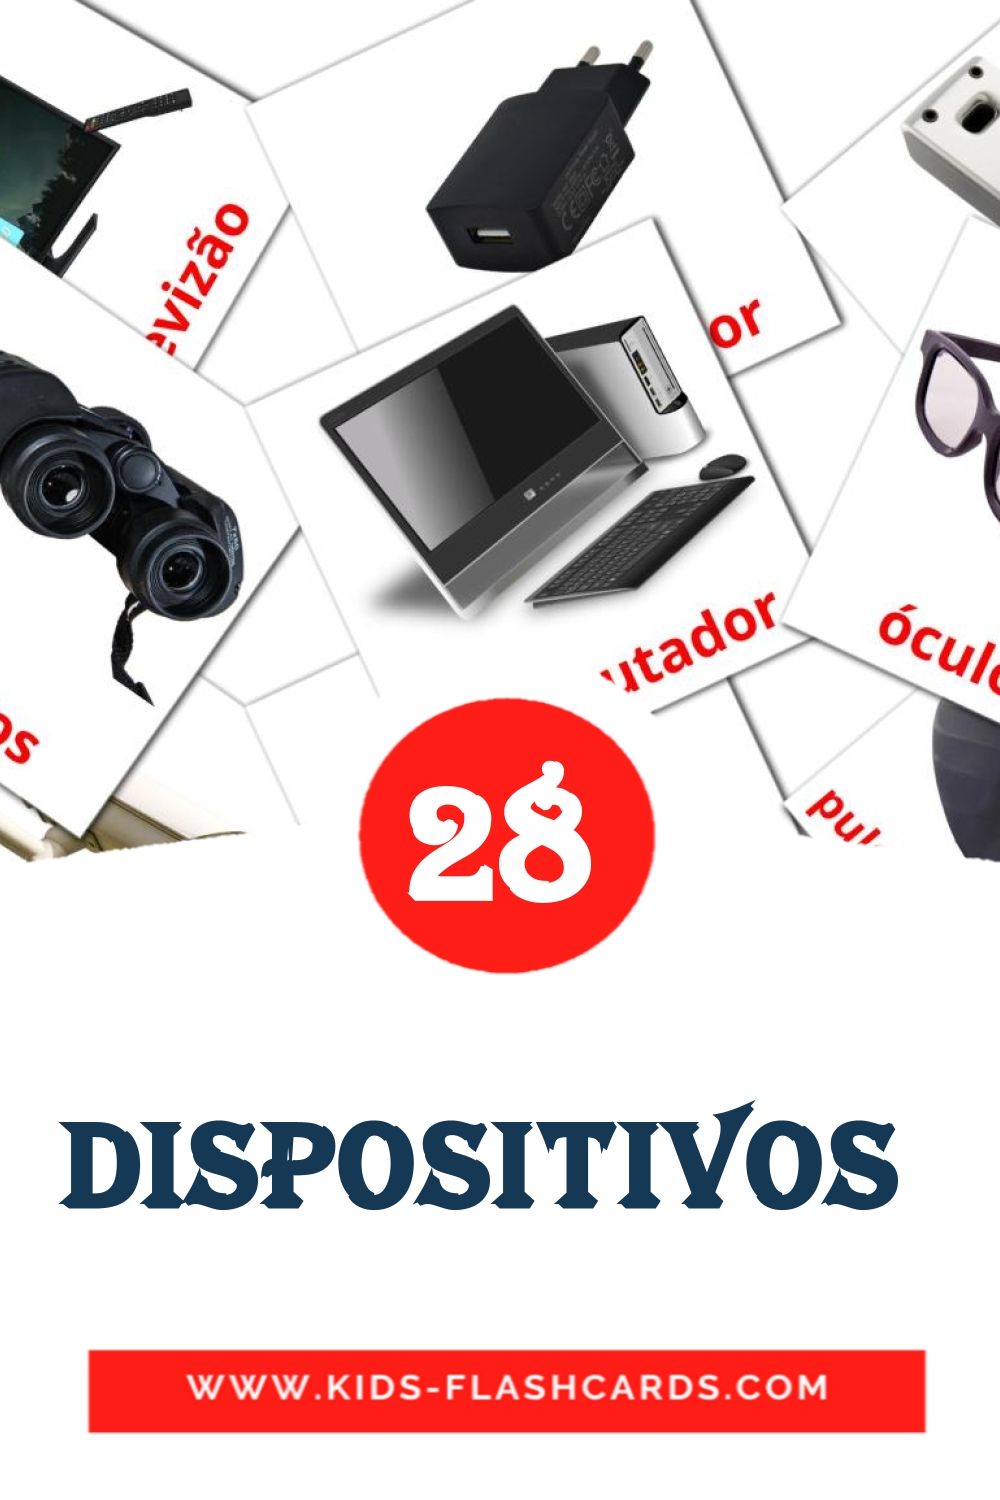 29 cartes illustrées de aparelhos / dispositivos /utencílios pour la maternelle en portugais